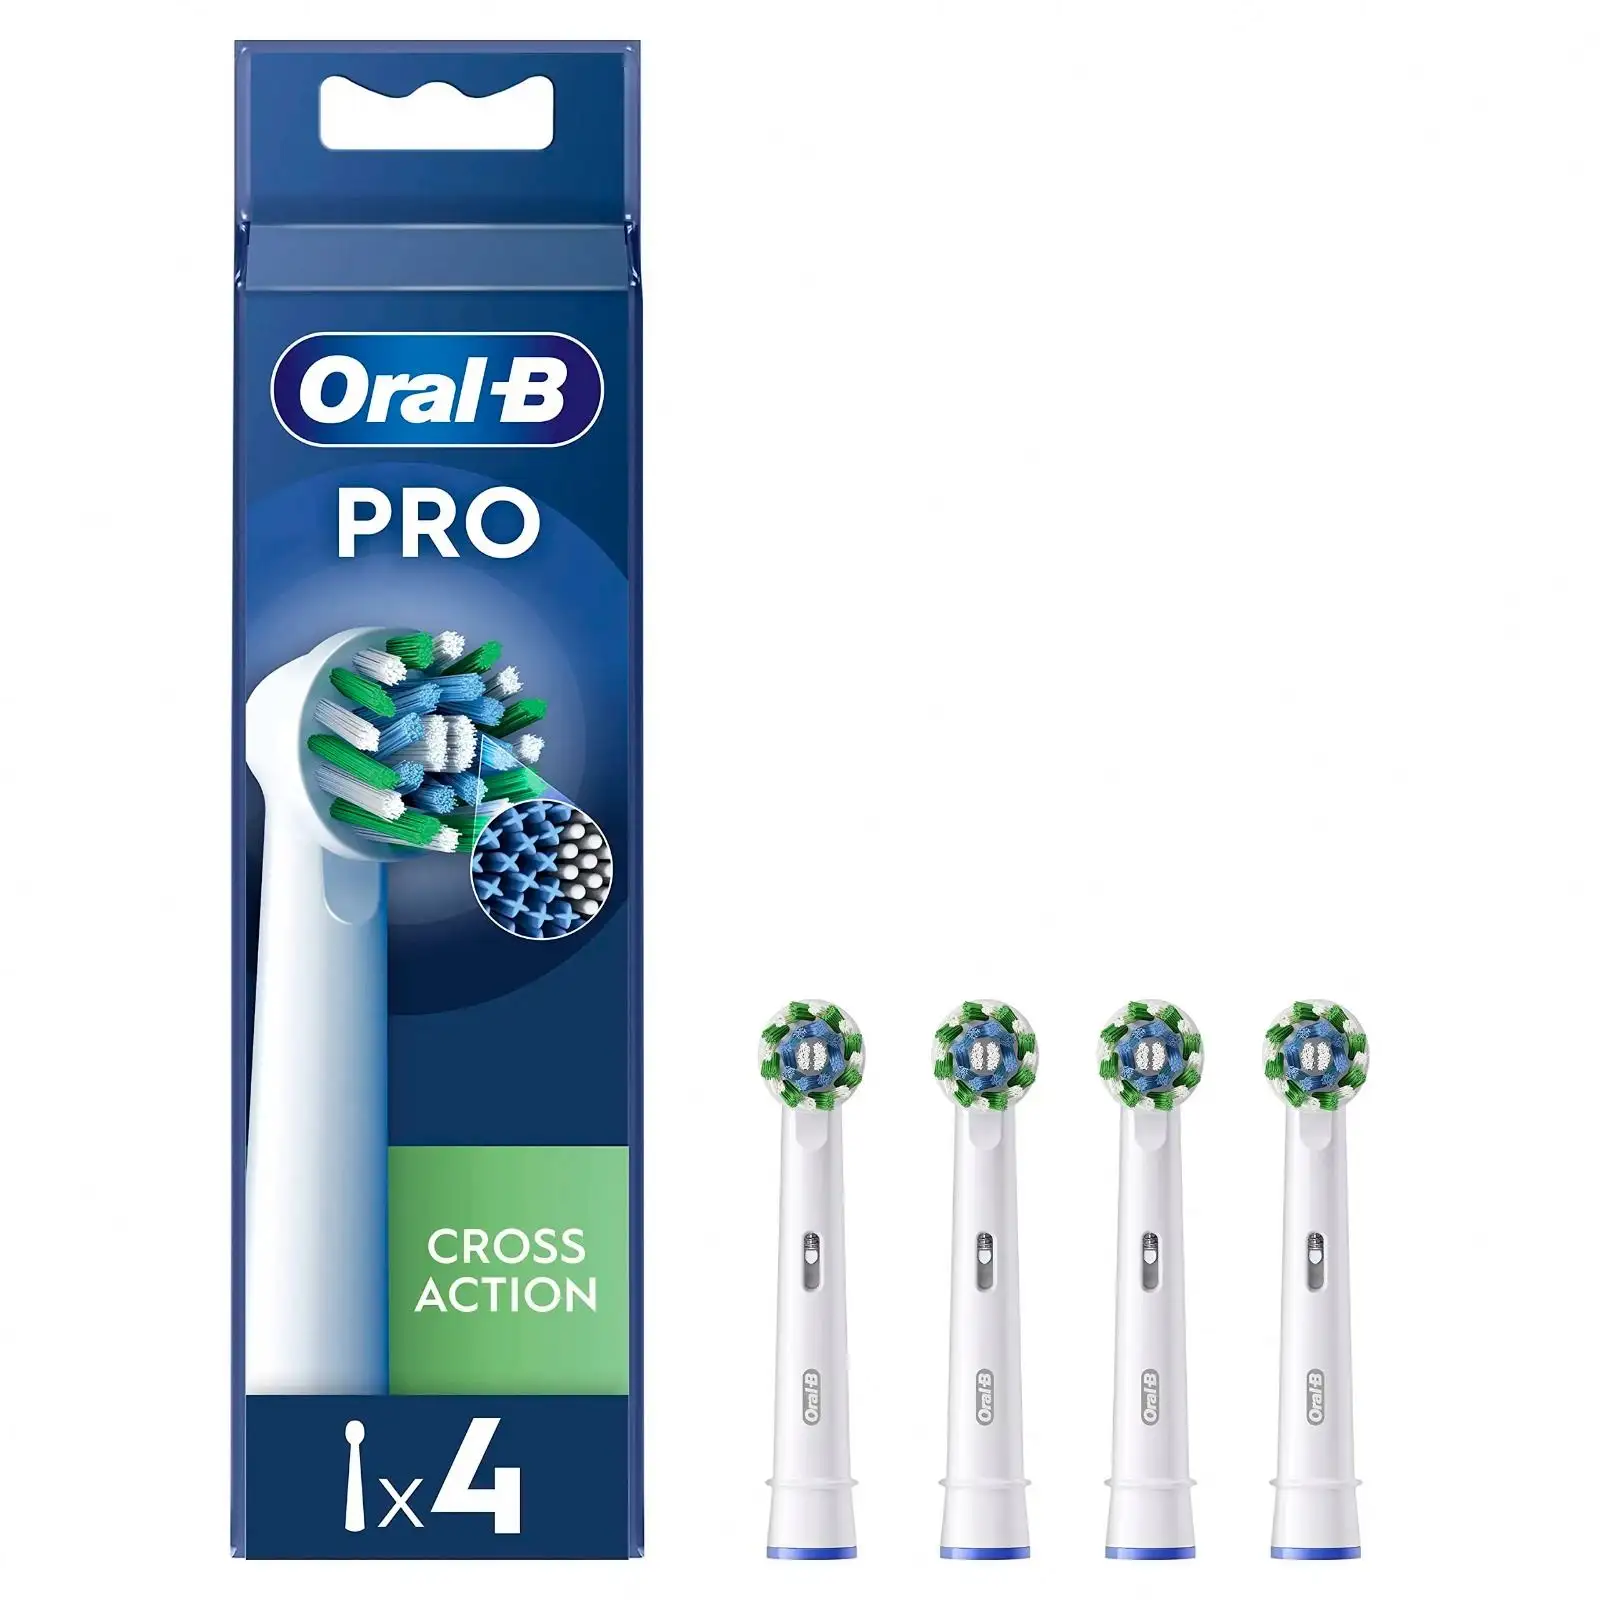 Oral-B Pro หัวแปรงสีฟันไฟฟ้าแบบ Cross Action และขนแปรงมุมสําหรับถอดลึก แพ็คหัวแปรงสีฟัน 4 หัว สีขาว